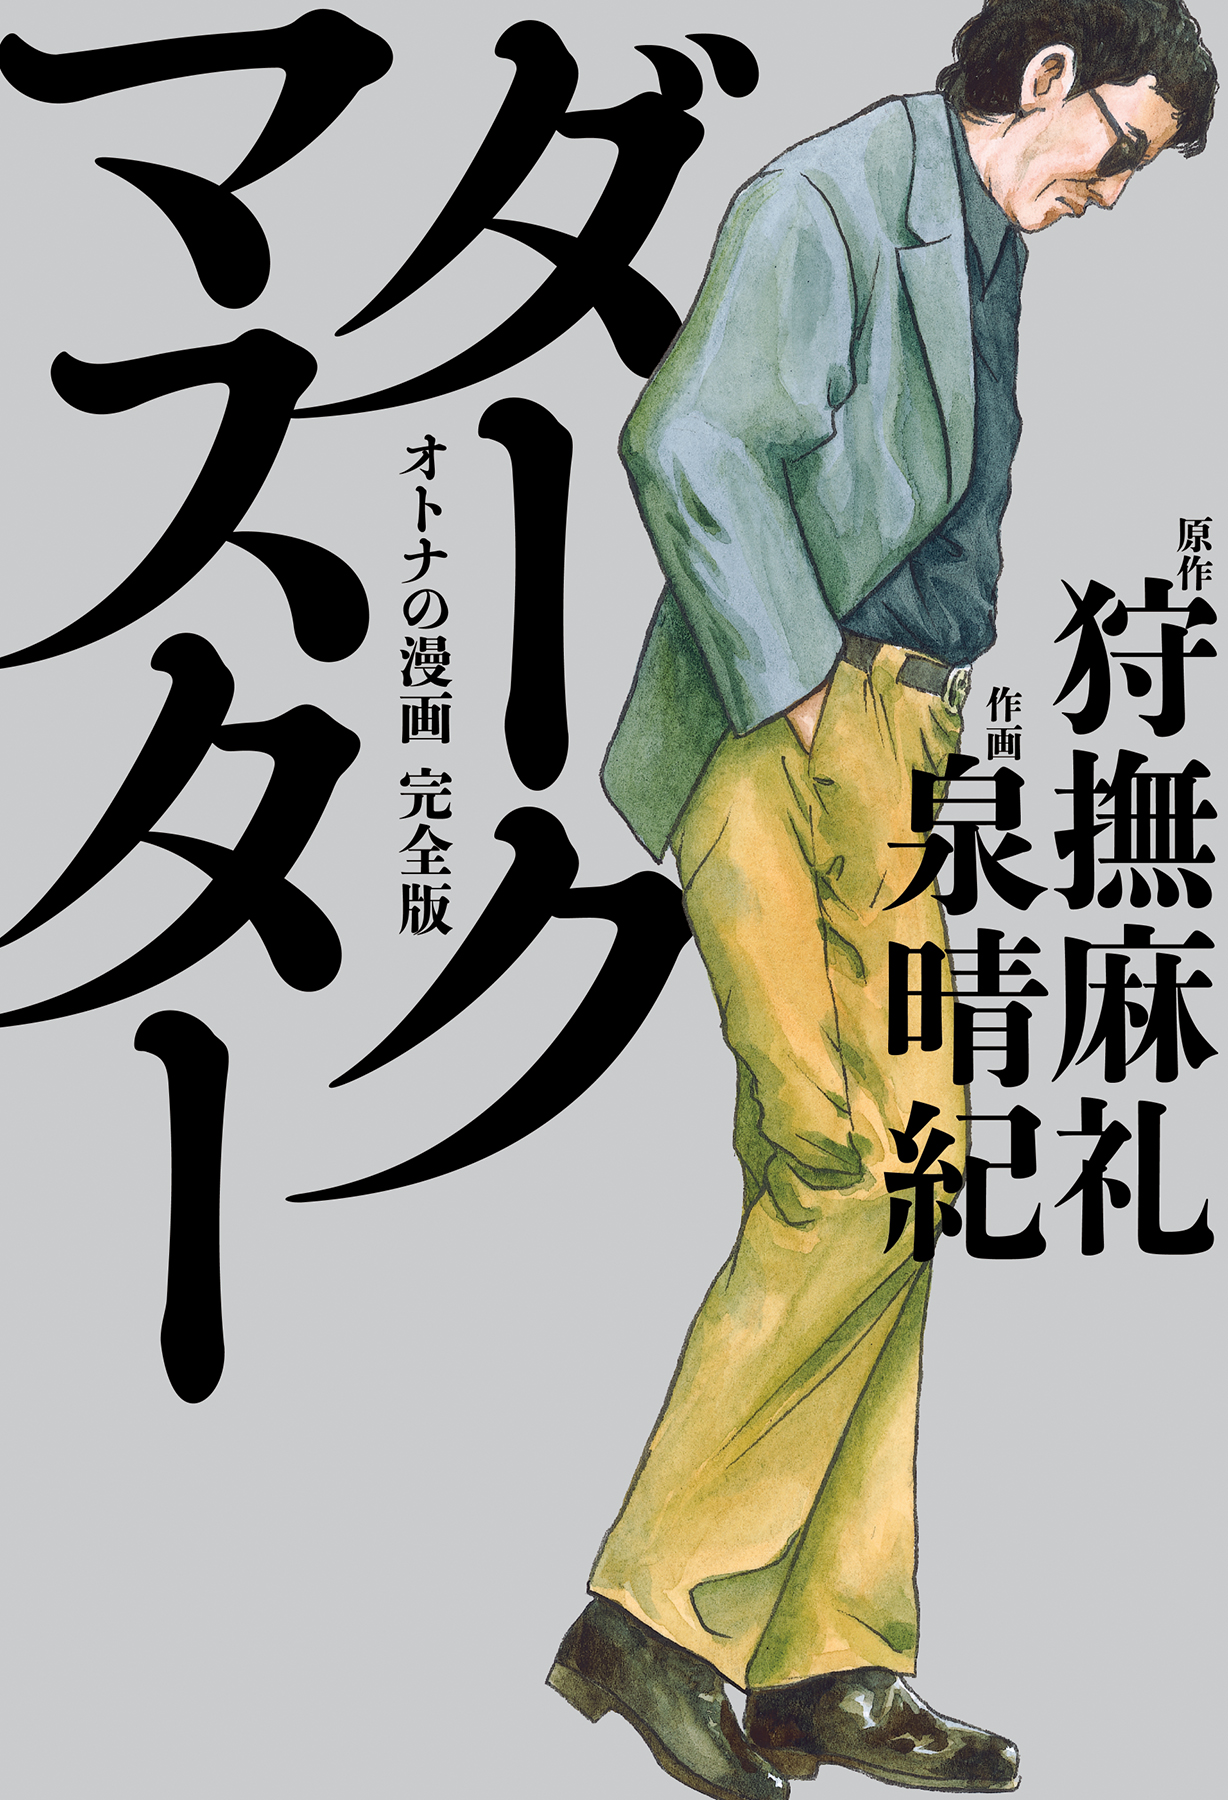 狩撫麻礼追悼特別刊行 ダークマスター オトナの漫画 完全版 超ボリュームで4月12日発売 株式会社kadokawaのプレスリリース